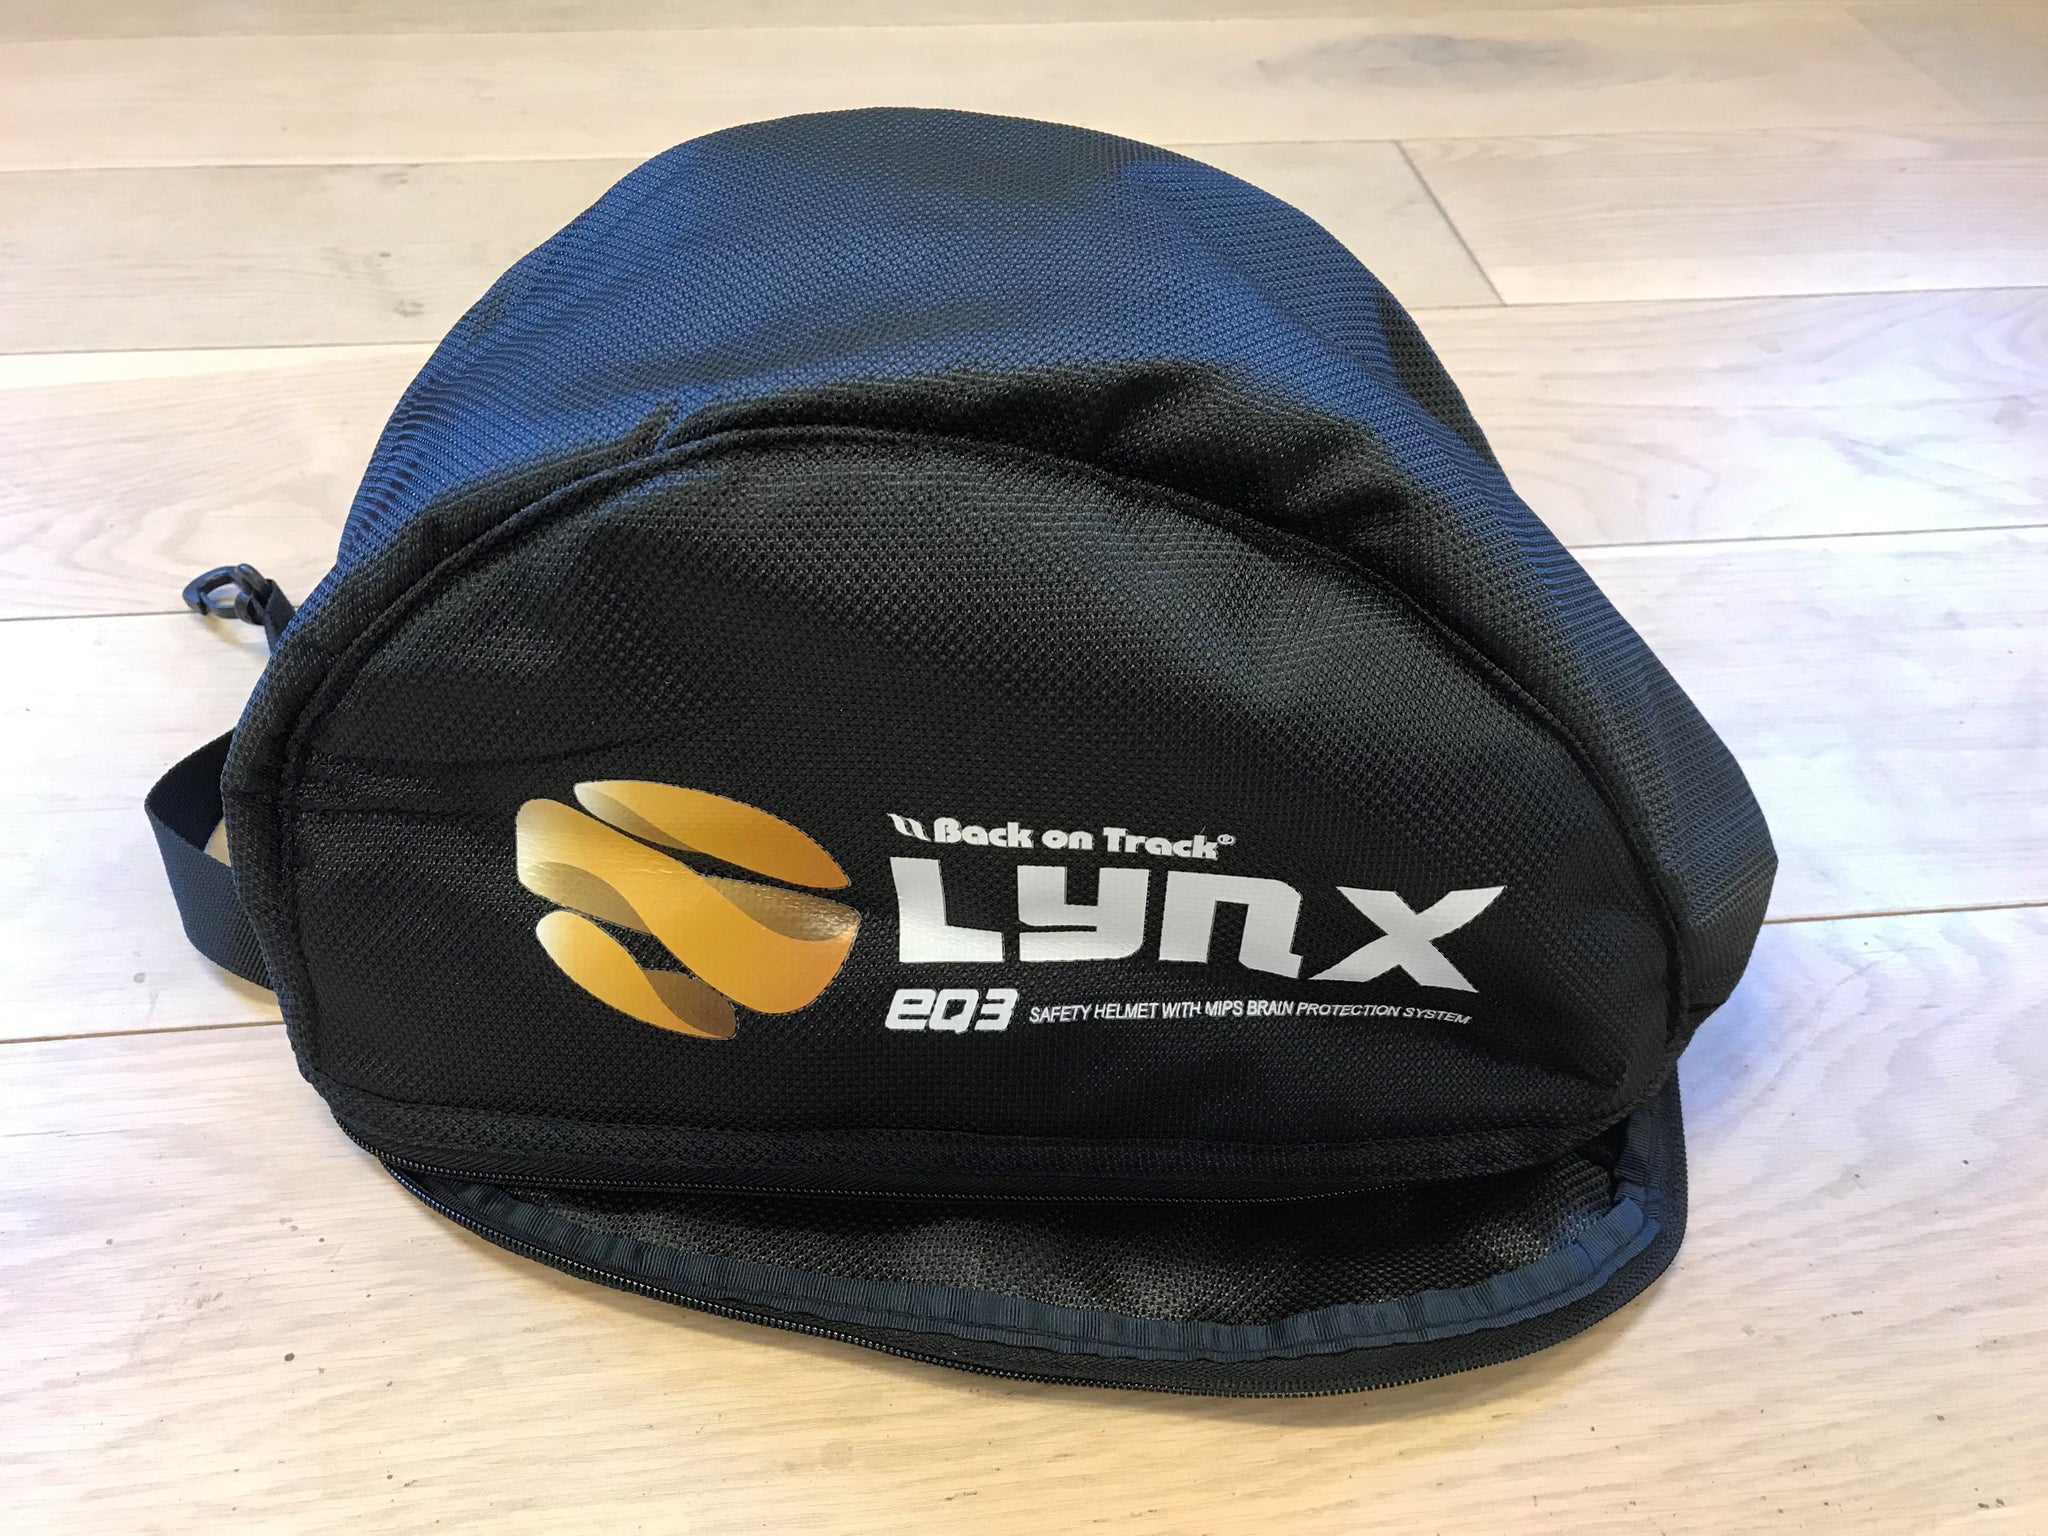 Taske til Lynx Ridehjelm